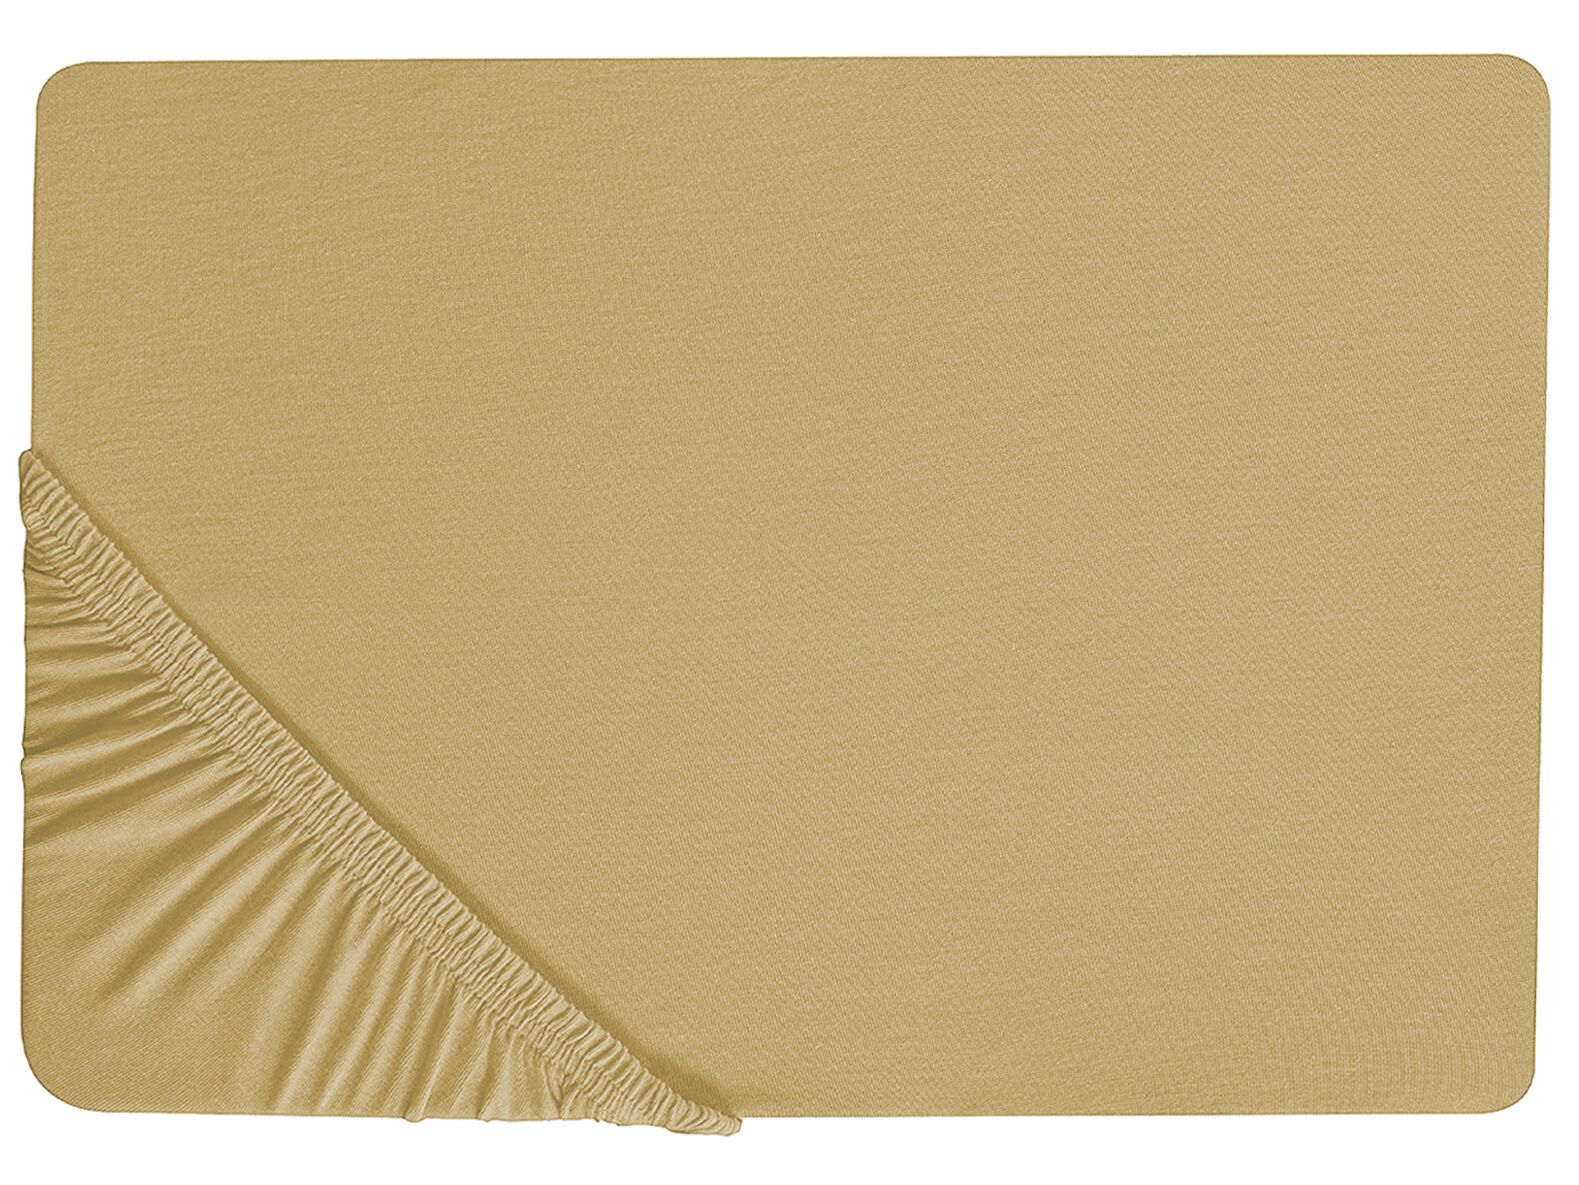 Olivazöld pamut gumis lepedő 90 x 200 cm JANBU_845882